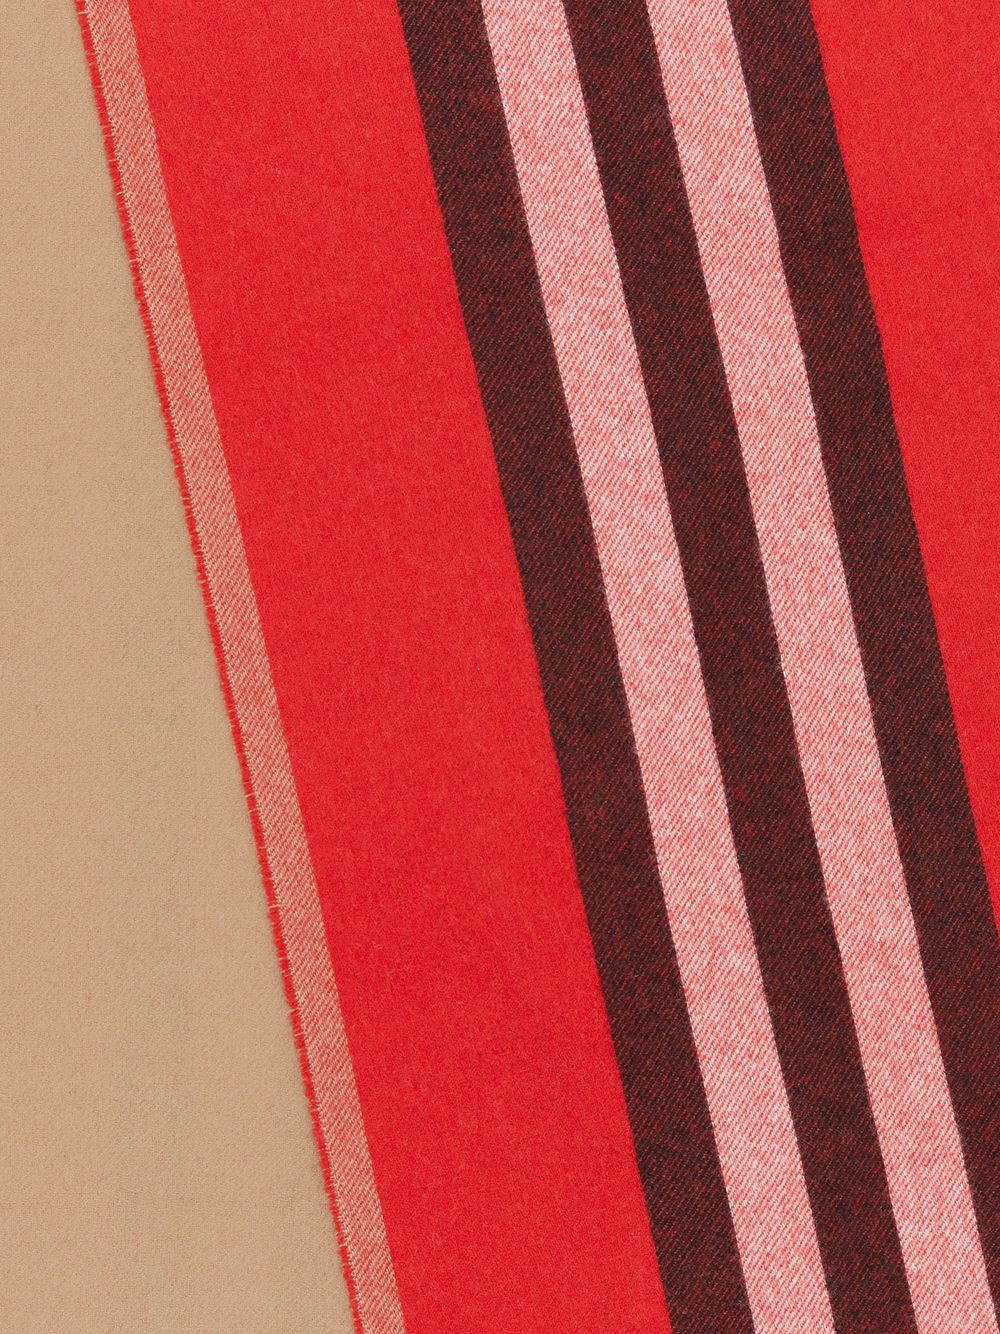 фото Burberry двусторонний шарф в полоску icon stripe